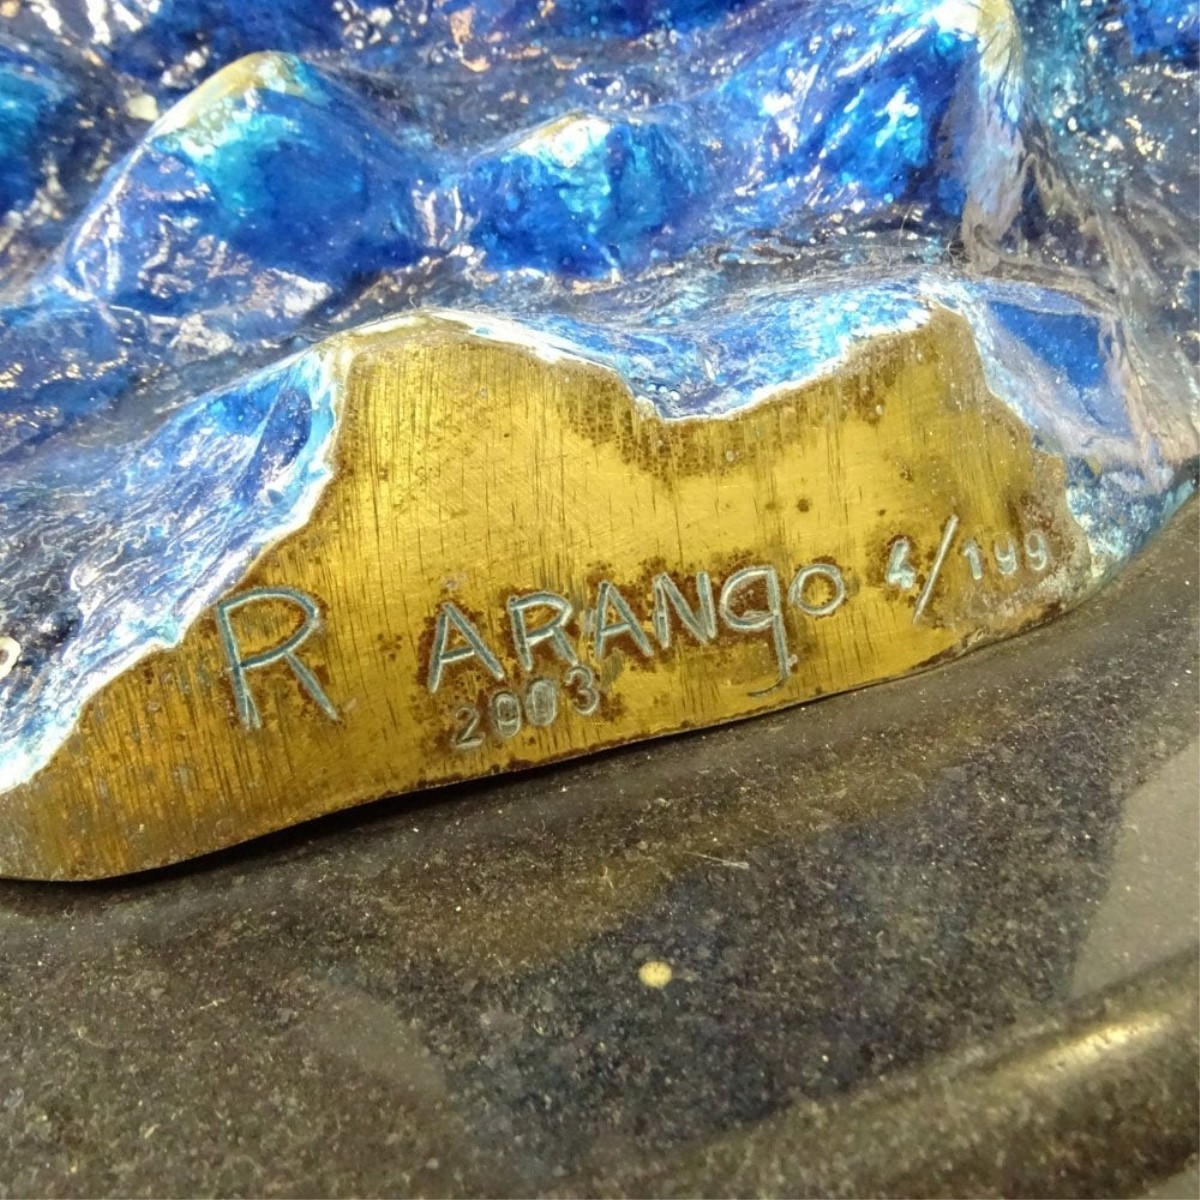 R. Arango (20th C.) Painted Bronze Sculpture